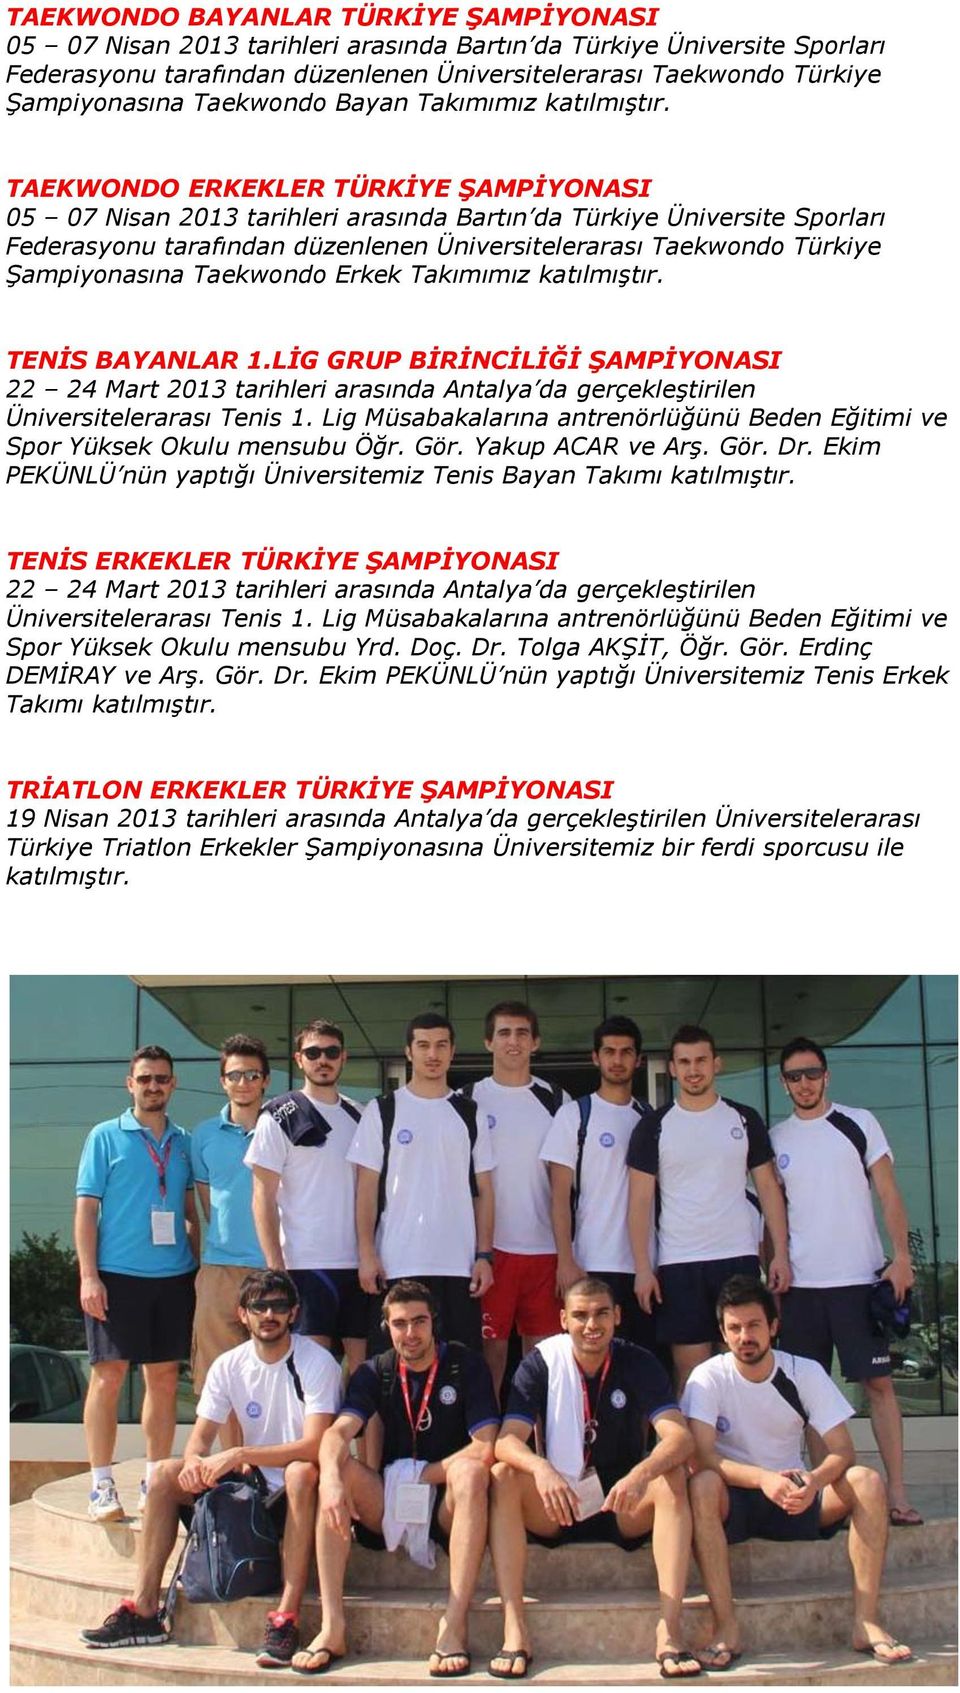 TAEKWONDO ERKEKLER TÜRKİYE ŞAMPİYONASI 05 07 Nisan 2013 tarihleri arasında Bartın da Türkiye Üniversite Sporları Federasyonu tarafından düzenlenen Üniversitelerarası Taekwondo Türkiye Şampiyonasına